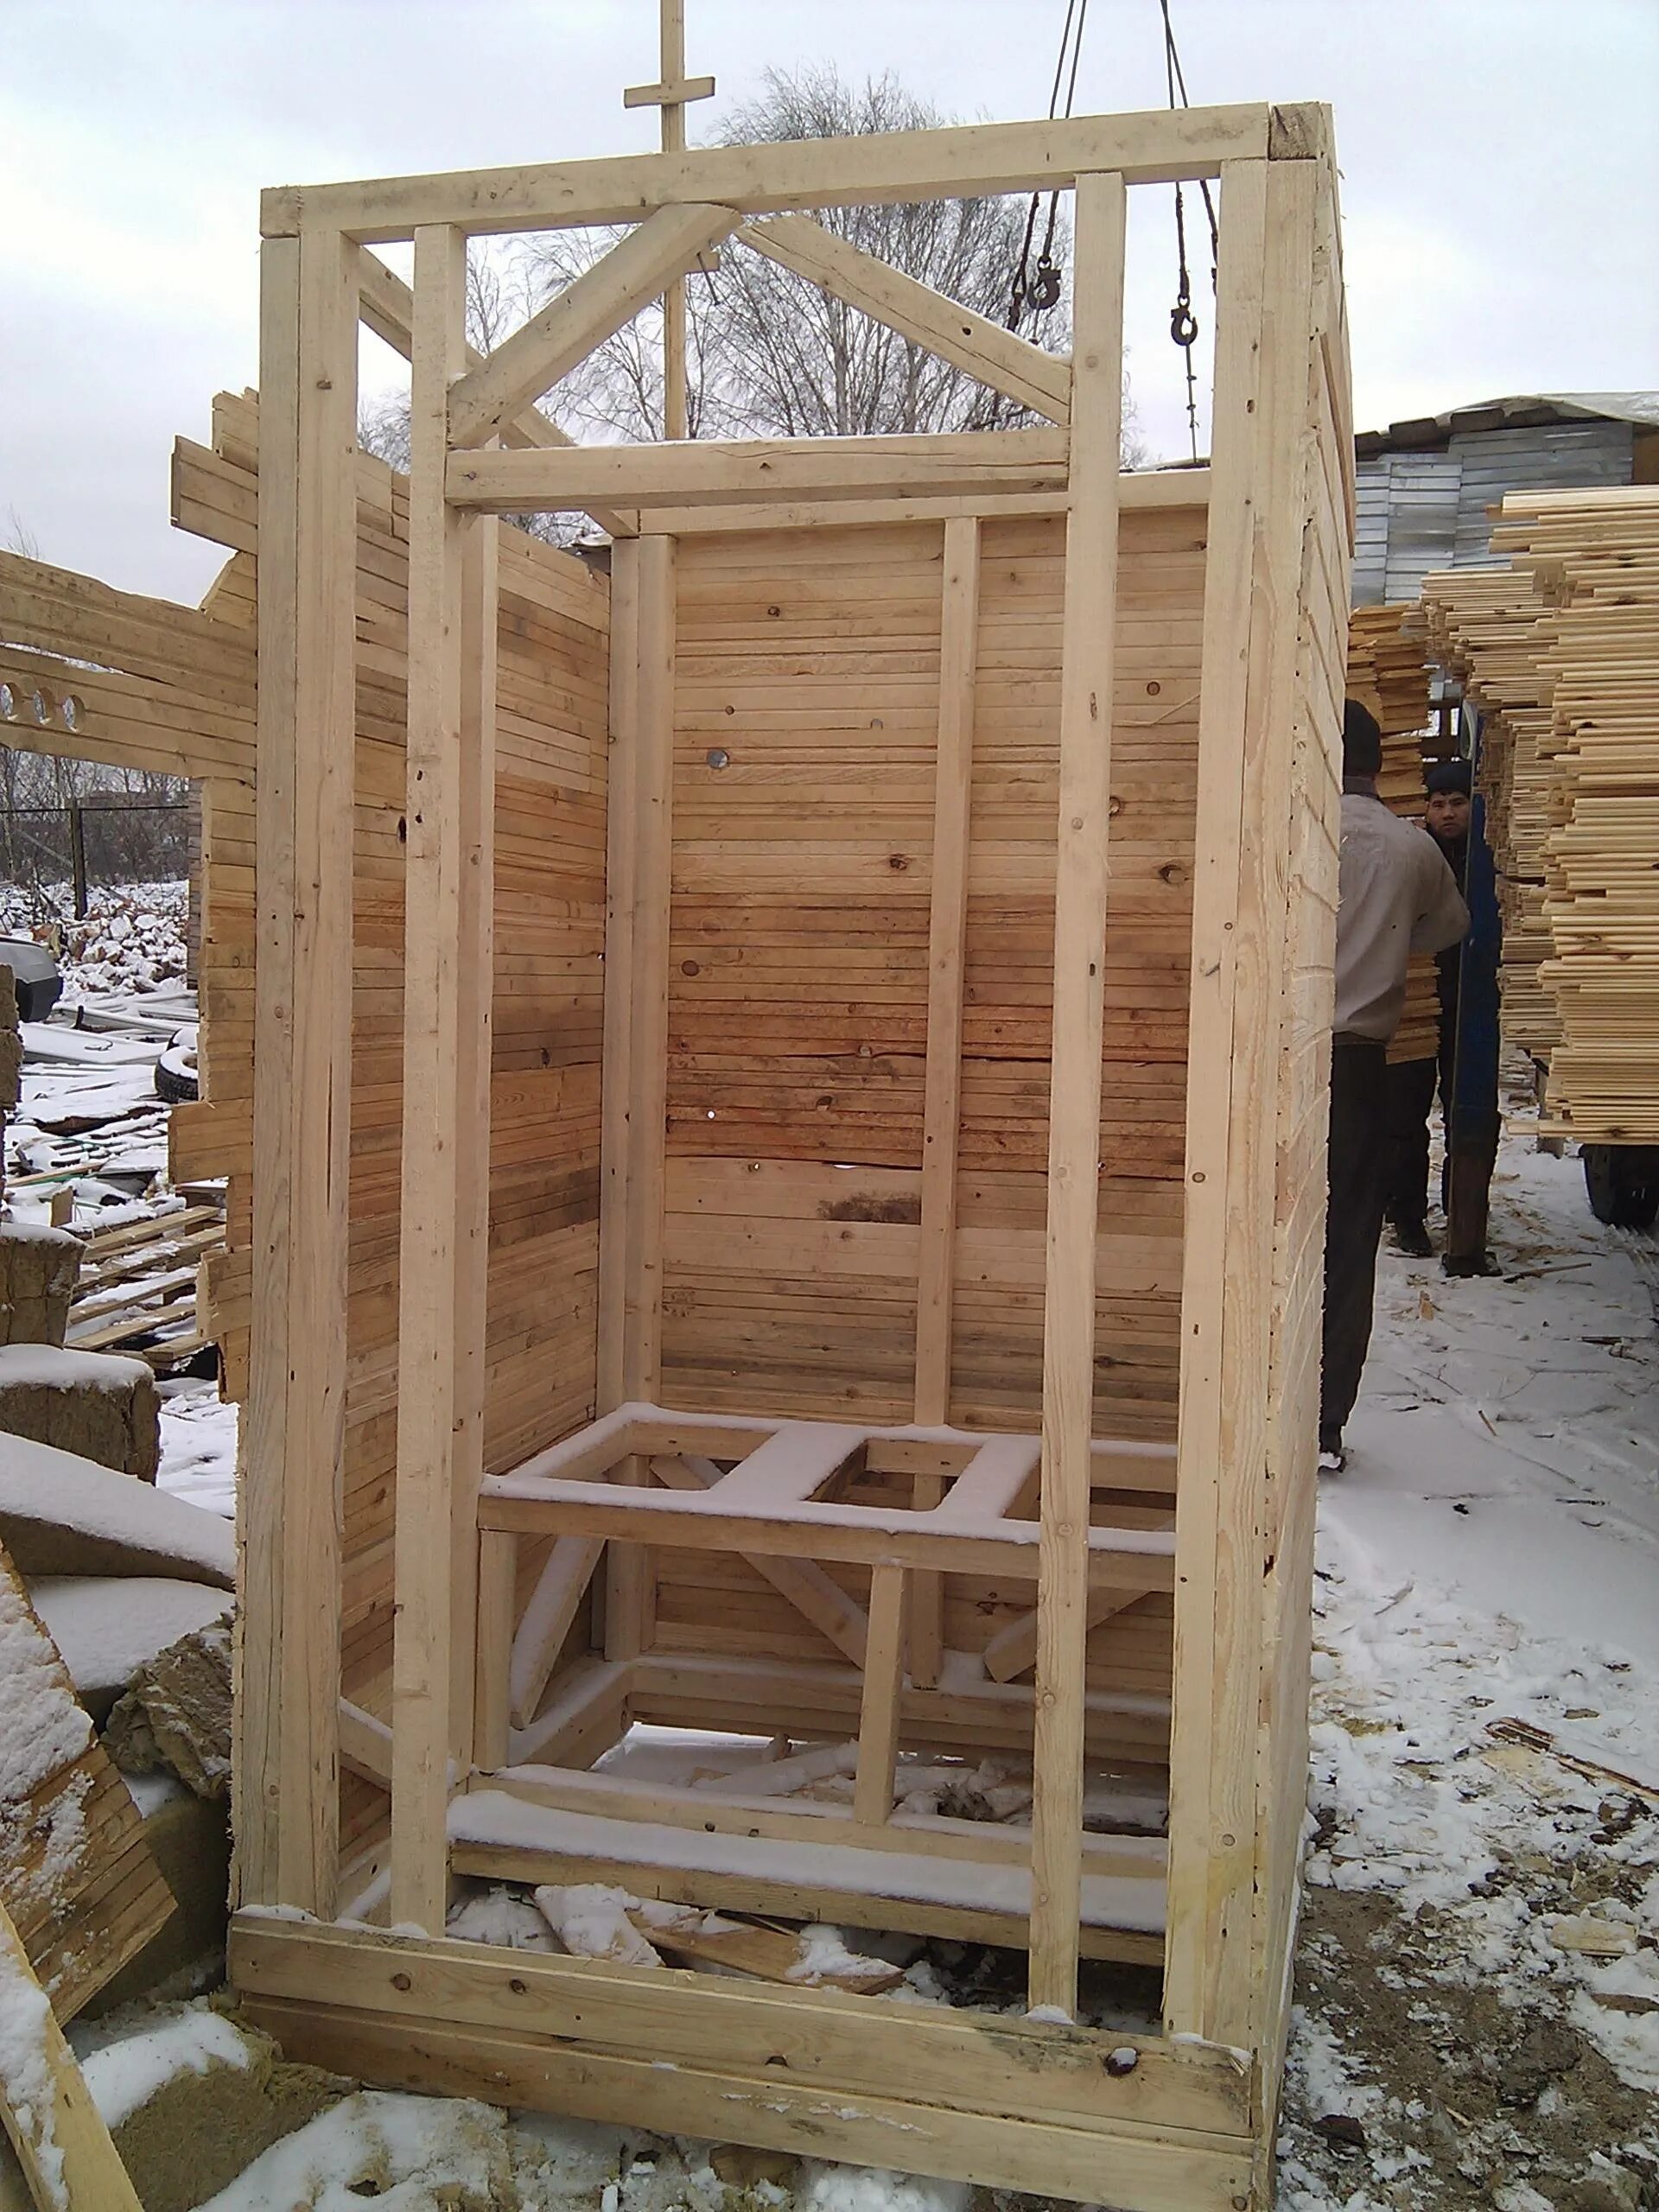 Постройка деревянного туалета. Каркас дачного туалета. Туалет для дачи деревянный каркас. Каркас деревянного туалета. Как самой сделать туалет на даче